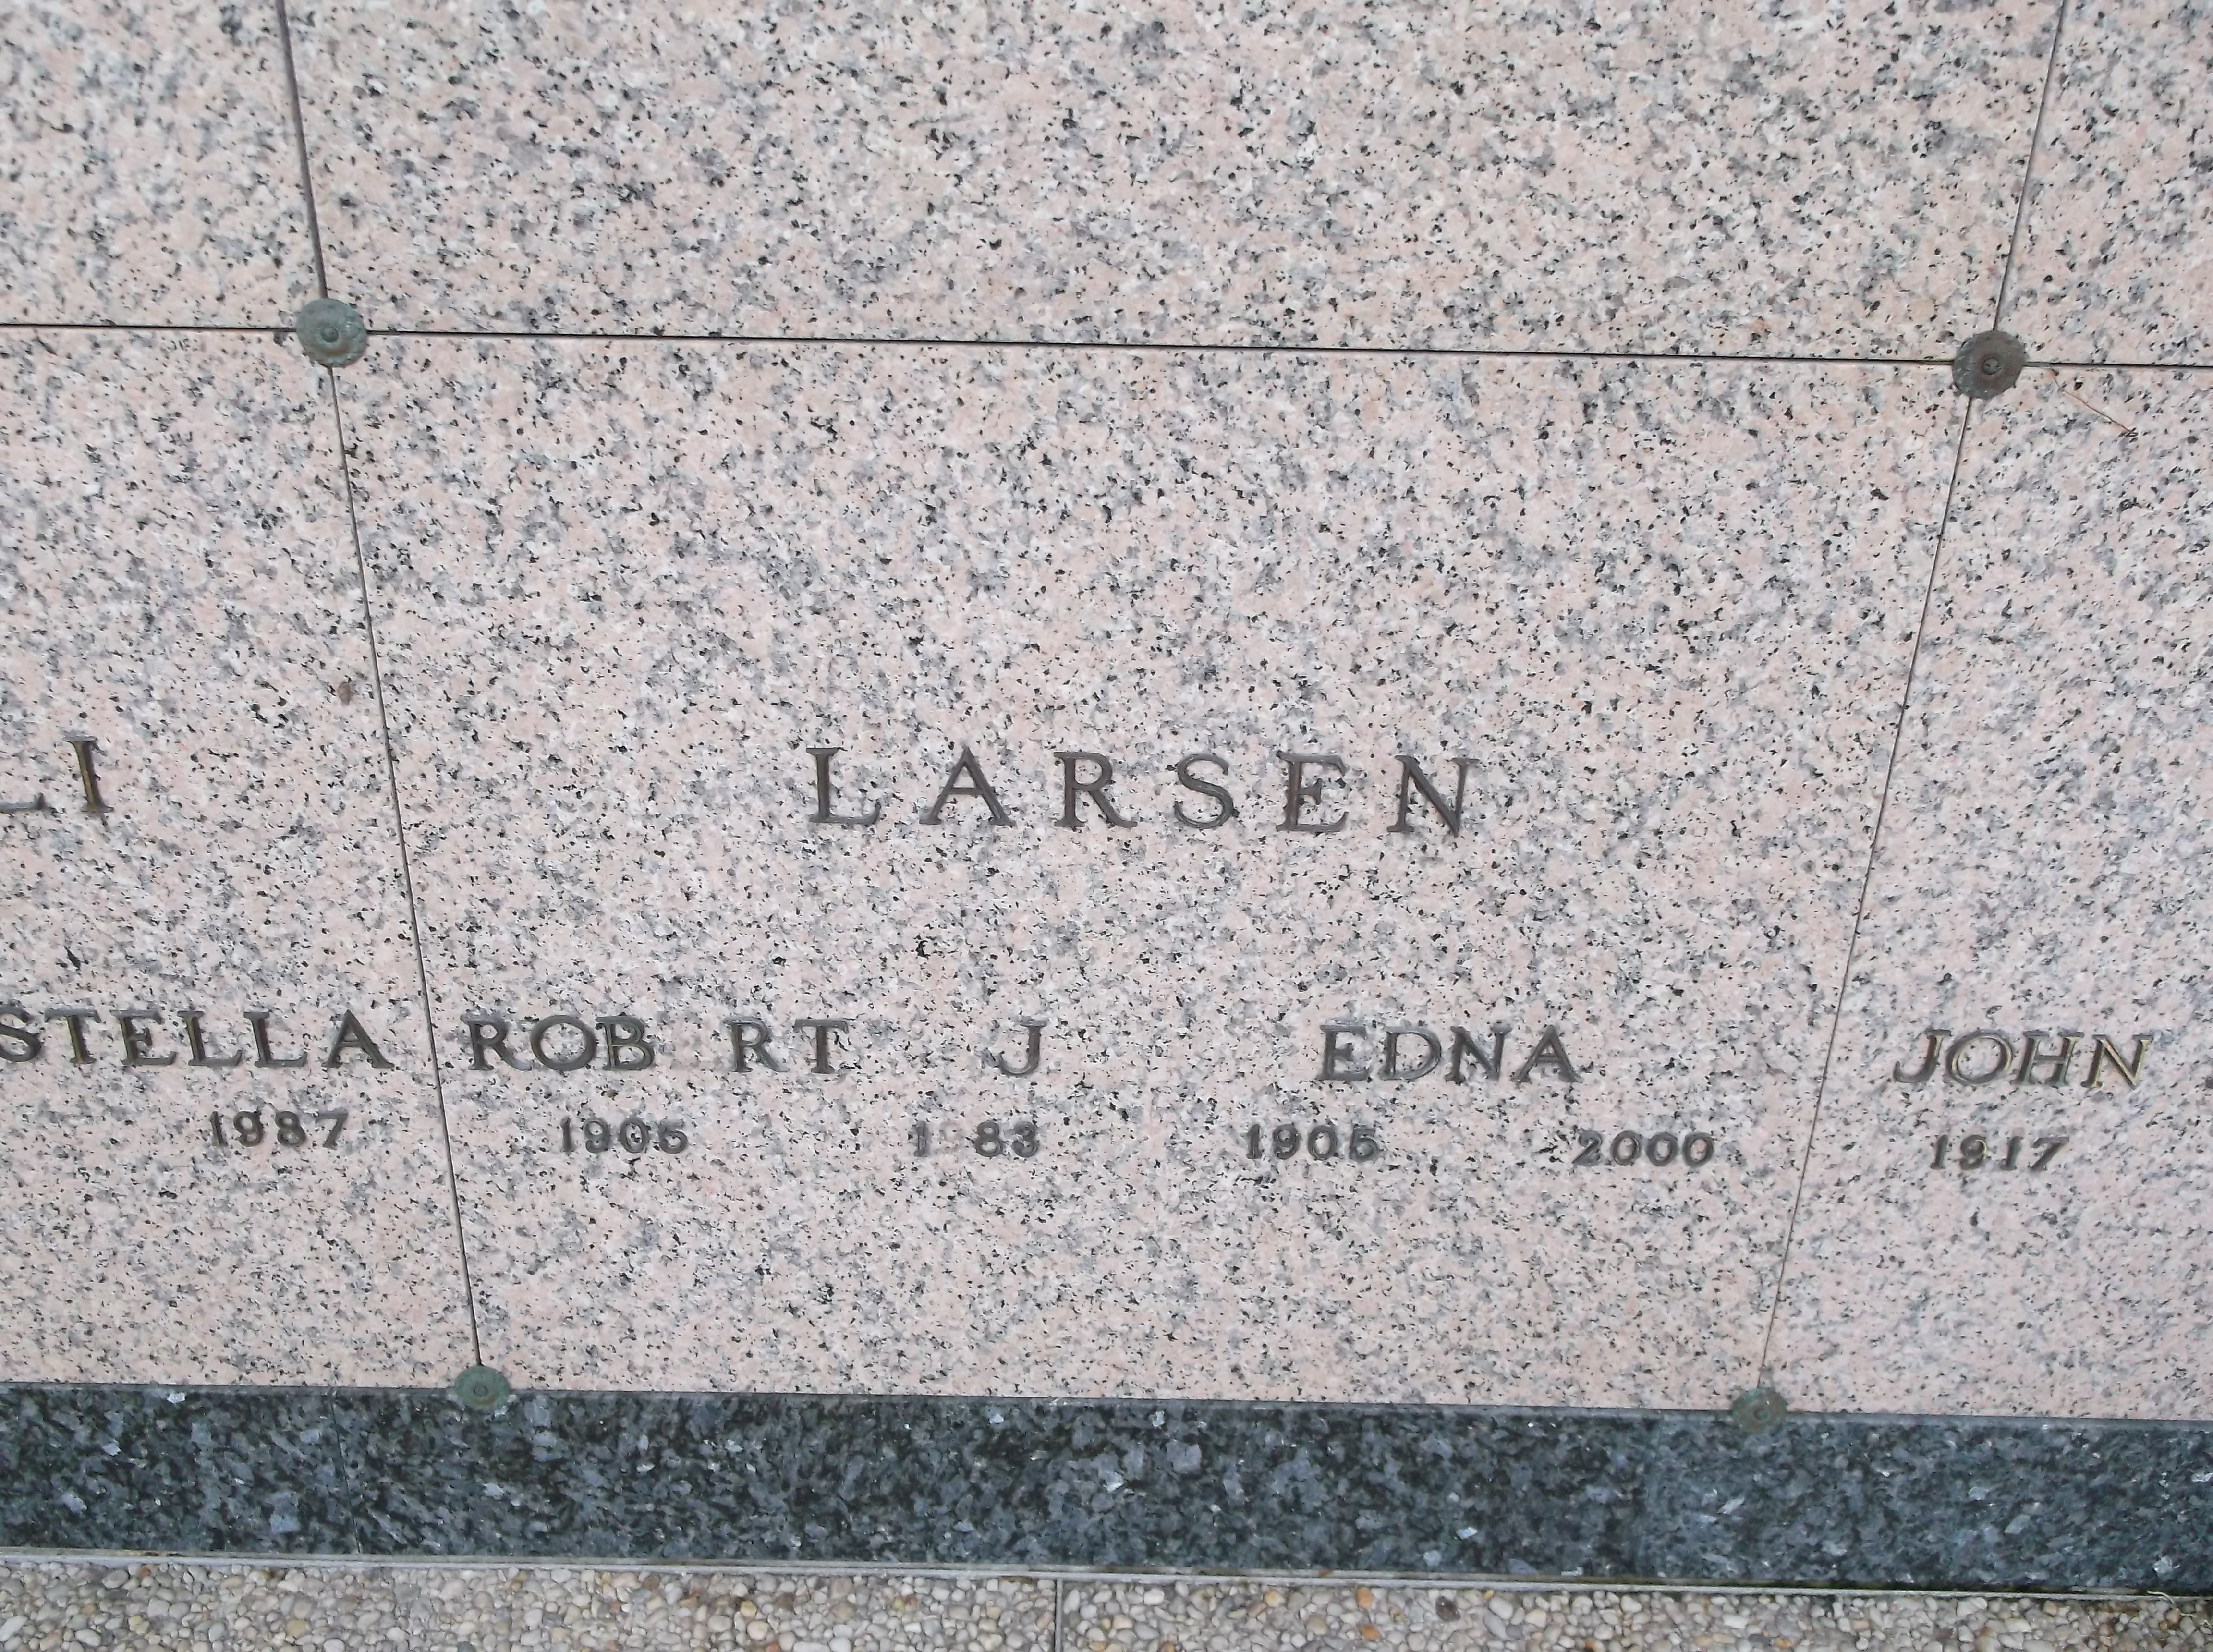 Edna Larsen